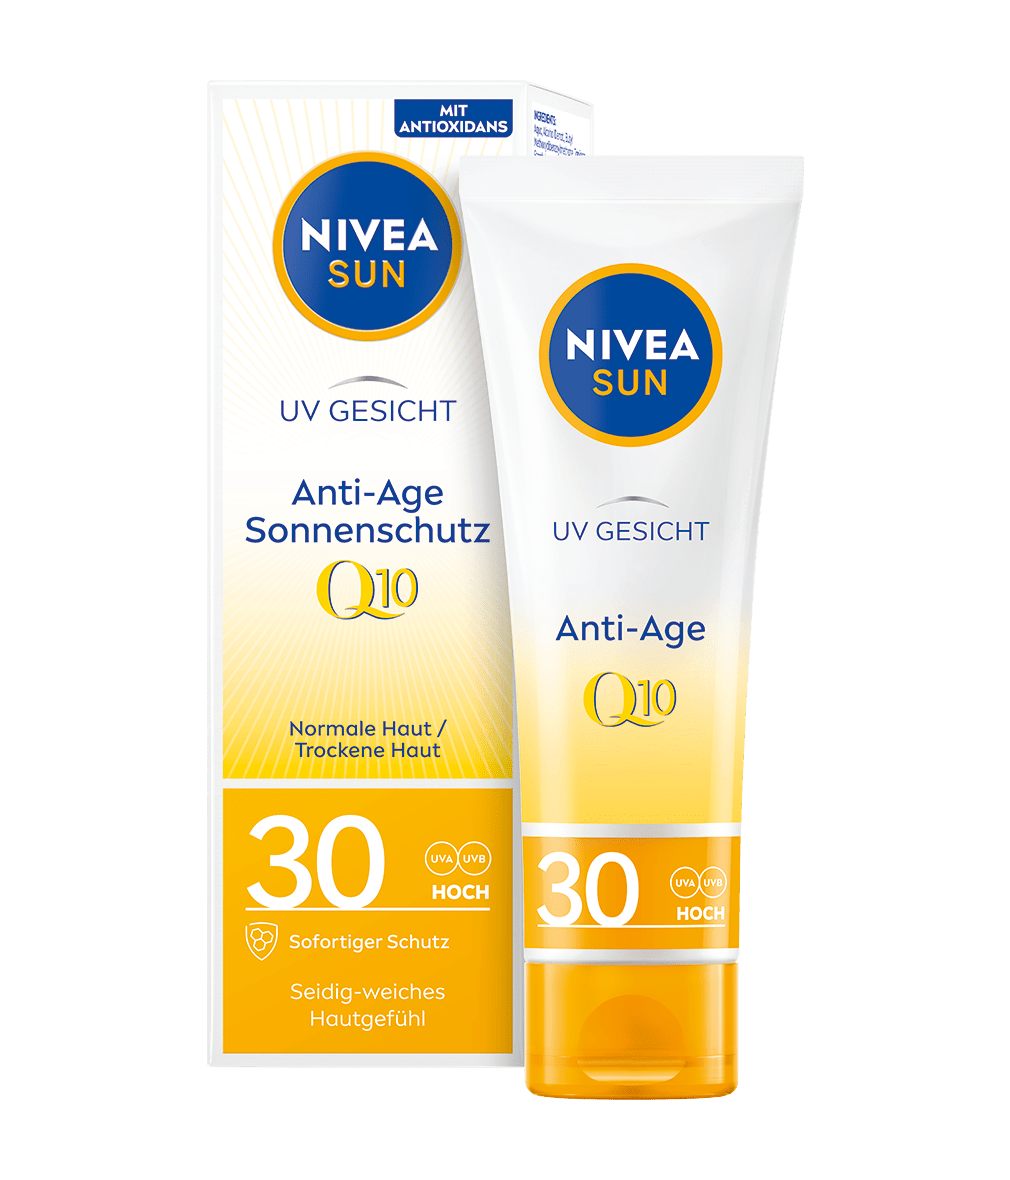 Anti-Age Sonnenschutz LSF 30 für das Gesicht – NIVEA SUN